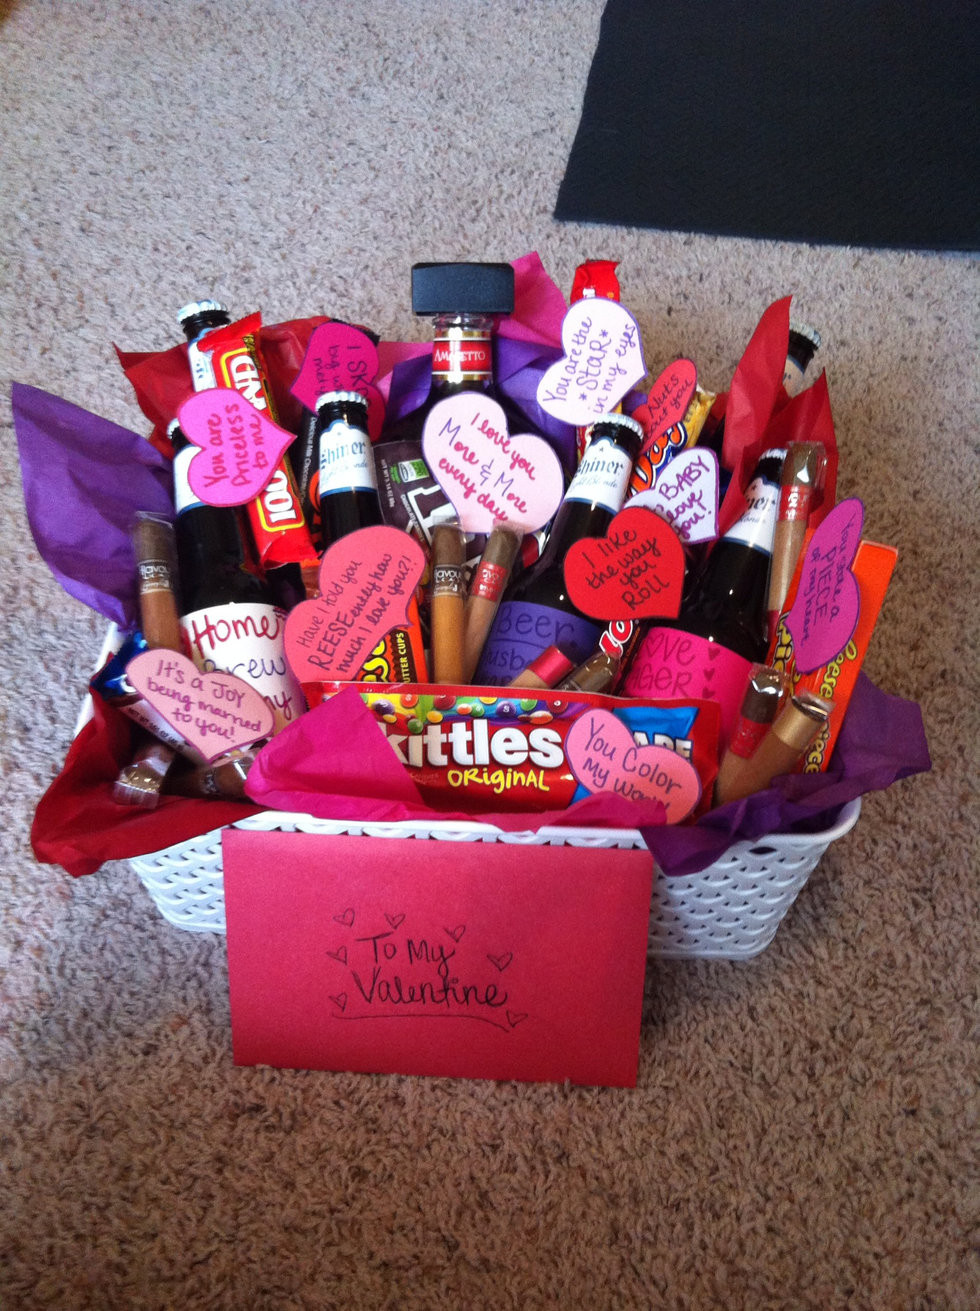 Valentines Gift Ideas For Your Boyfriend
 25 Ideas for Cute Gift Ideas for Your Boyfriend Home